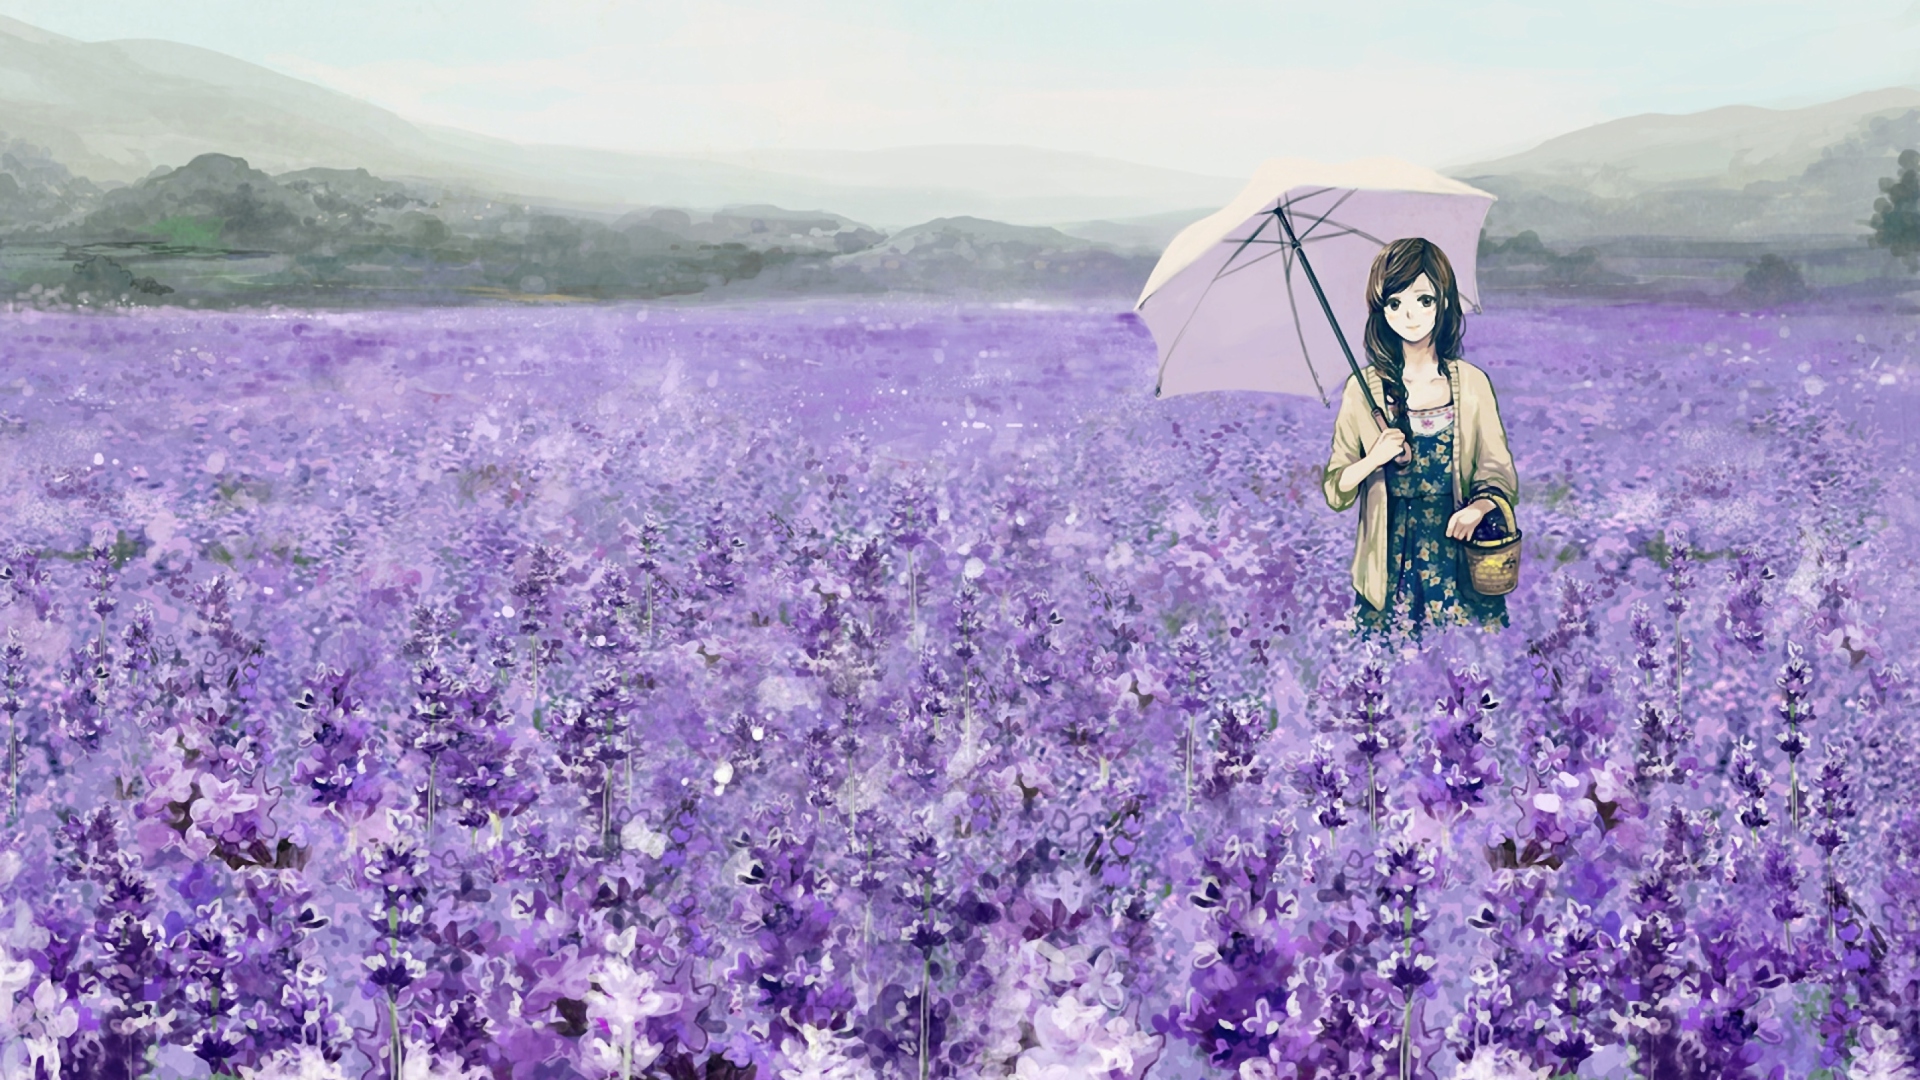 Sfondi Girl With Umbrella In Lavender Field 1920x1080